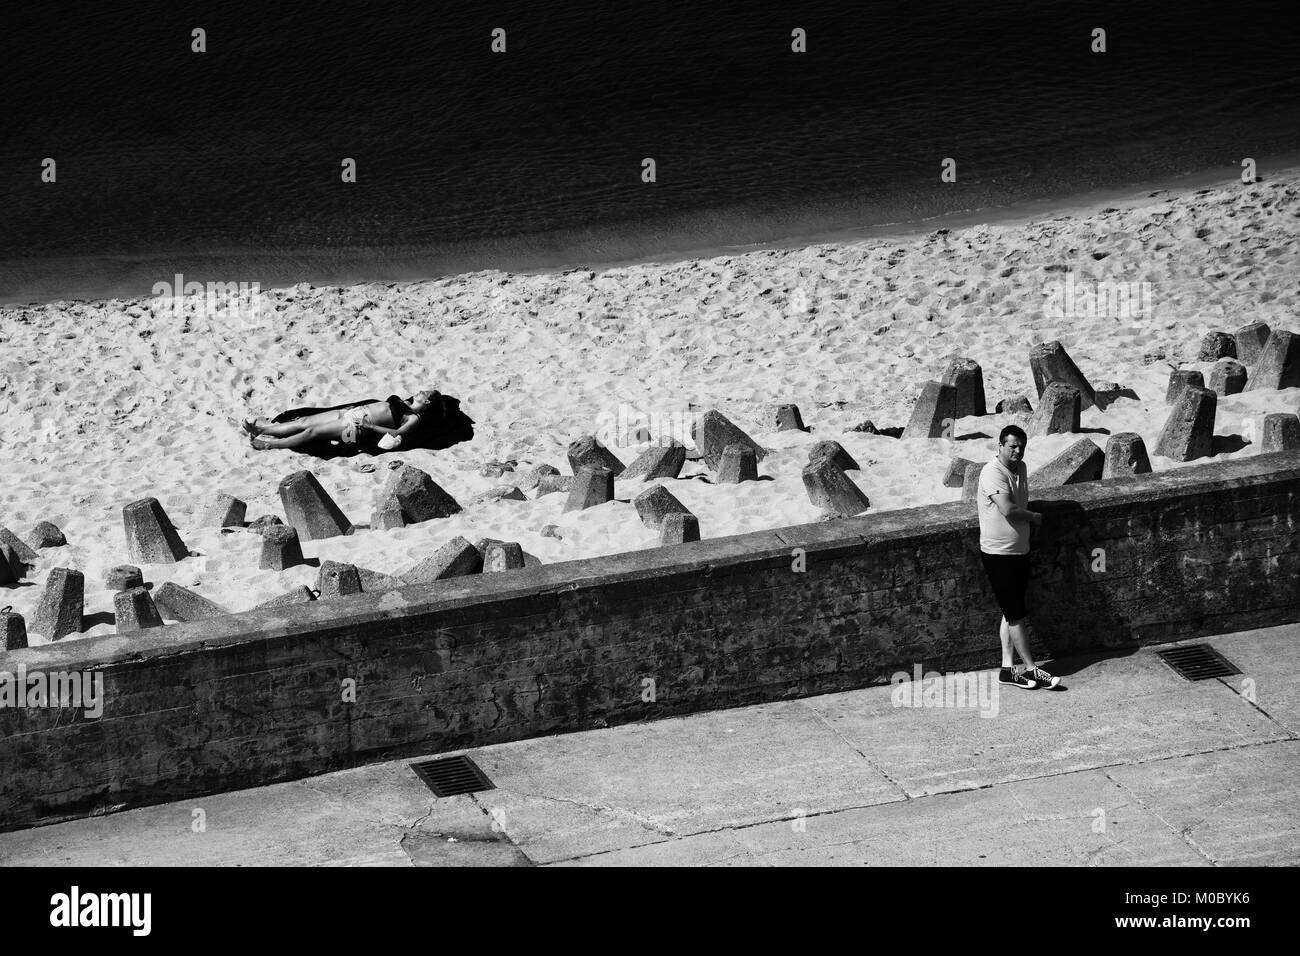 Le noir et blanc de l'hôtel town waterfront sur la mer Baltique, brise-lames en béton renforcé avec plage de sable, des blocs de lignes diagonales contrastées Banque D'Images